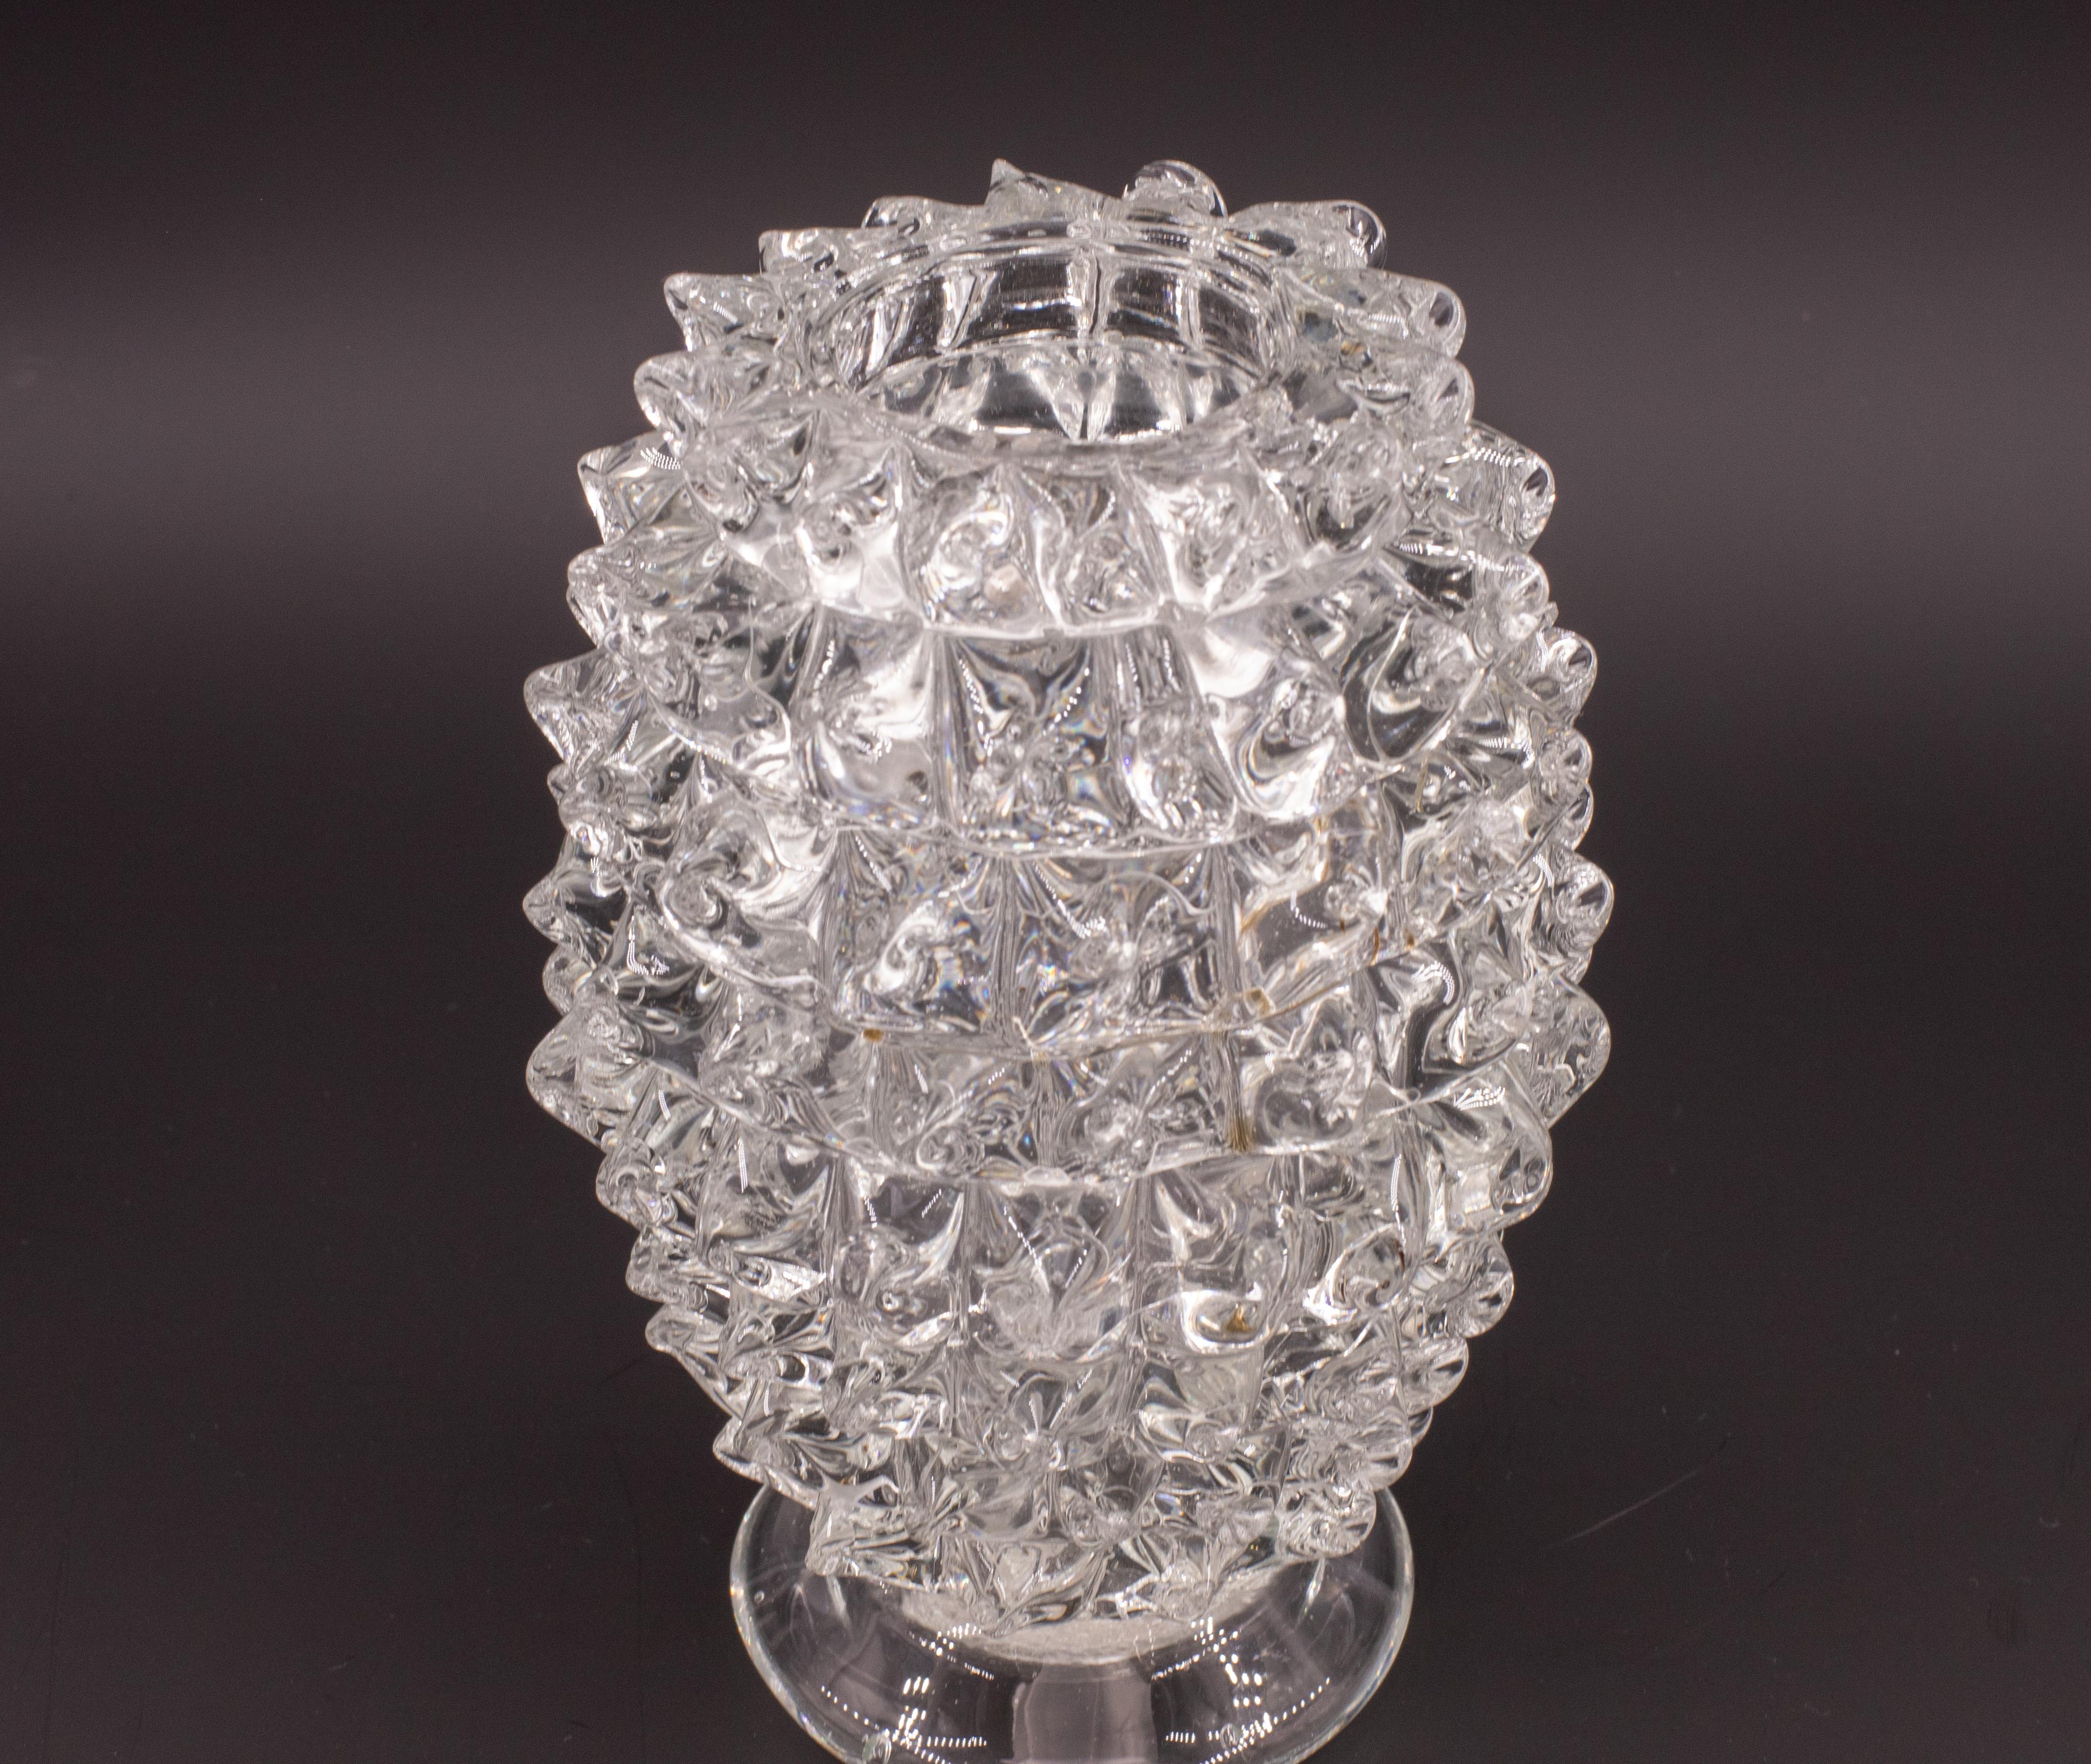 Étonnant vase en verre de Murano soufflé à la bouche en cristal rostrato, datant du milieu du siècle dernier. Ce magnifique objet a été produit dans les années 1940 en Italie par Ercole Barovier pour Barovier&Toso.

Ce chef-d'œuvre est un hommage